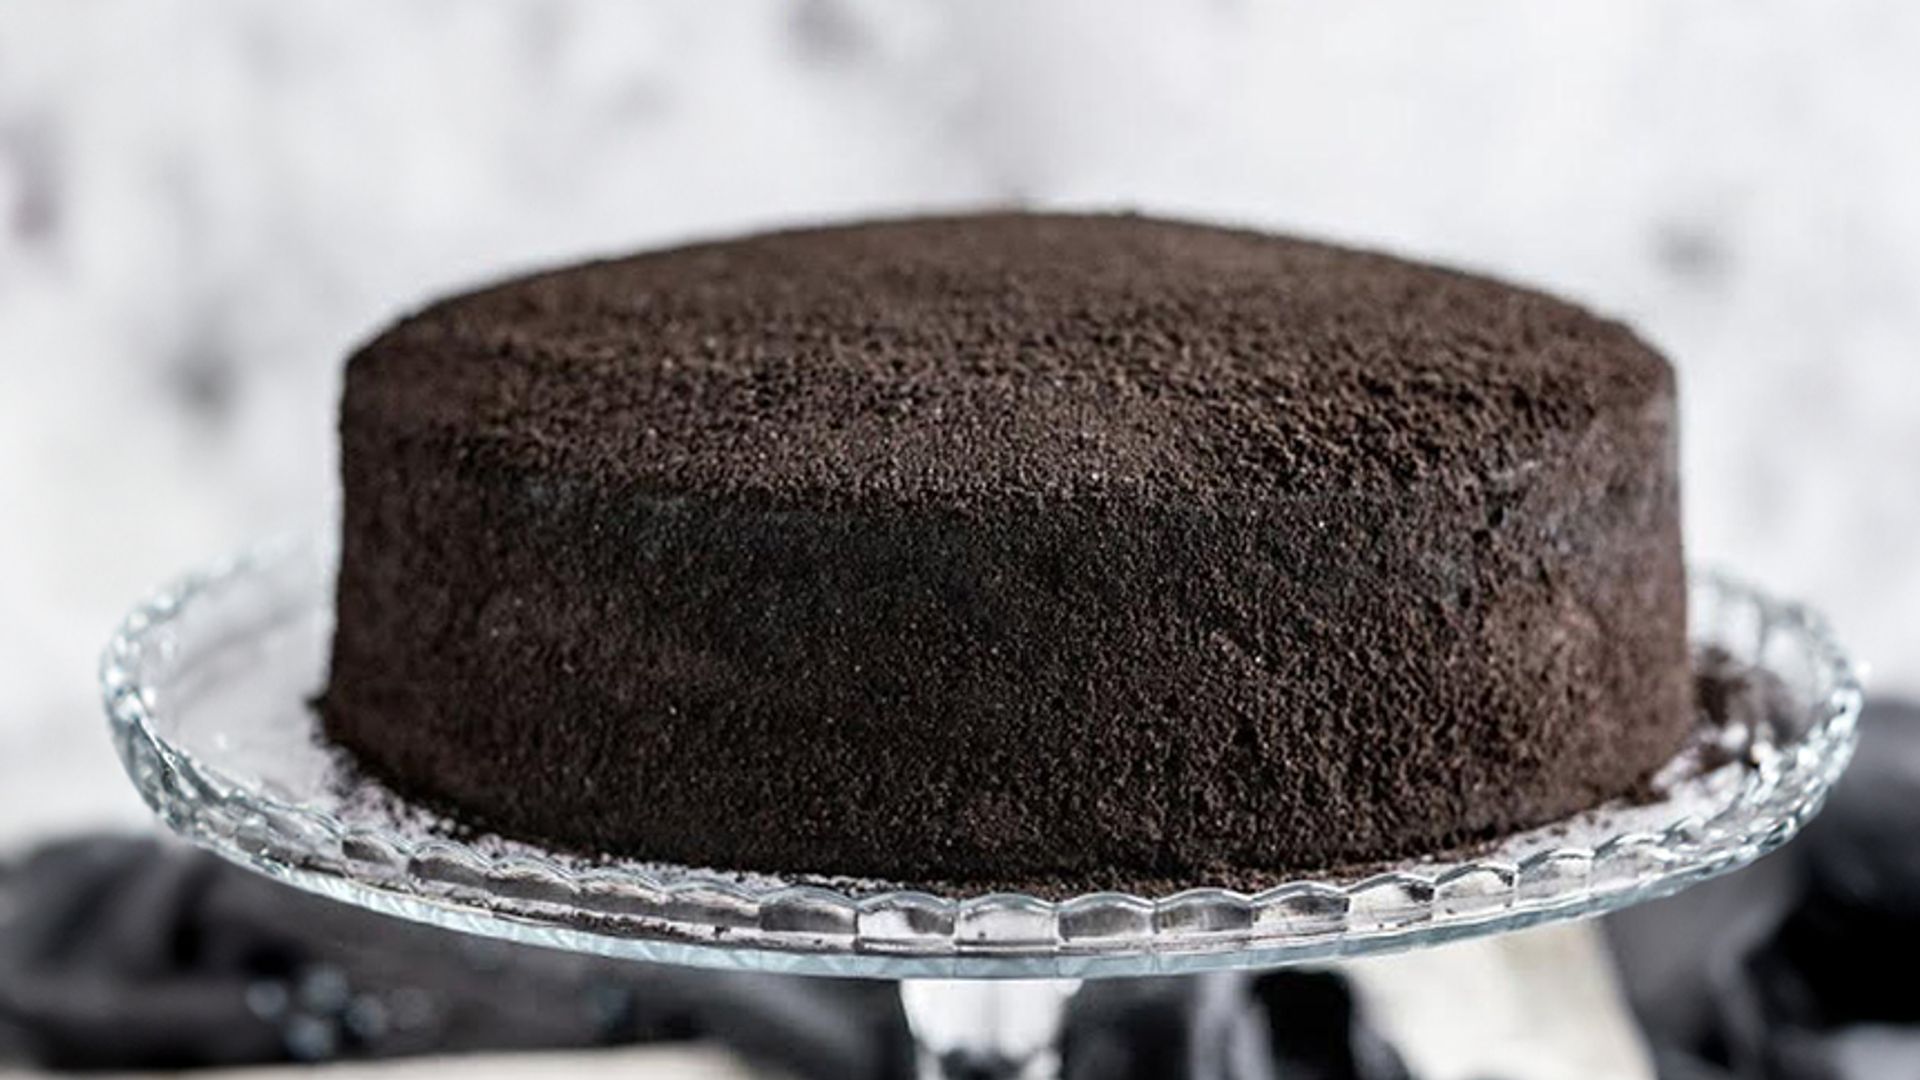 Black Velvet Cake / Die SCHWARZE Kenwood Cooking Chef XL ist da 